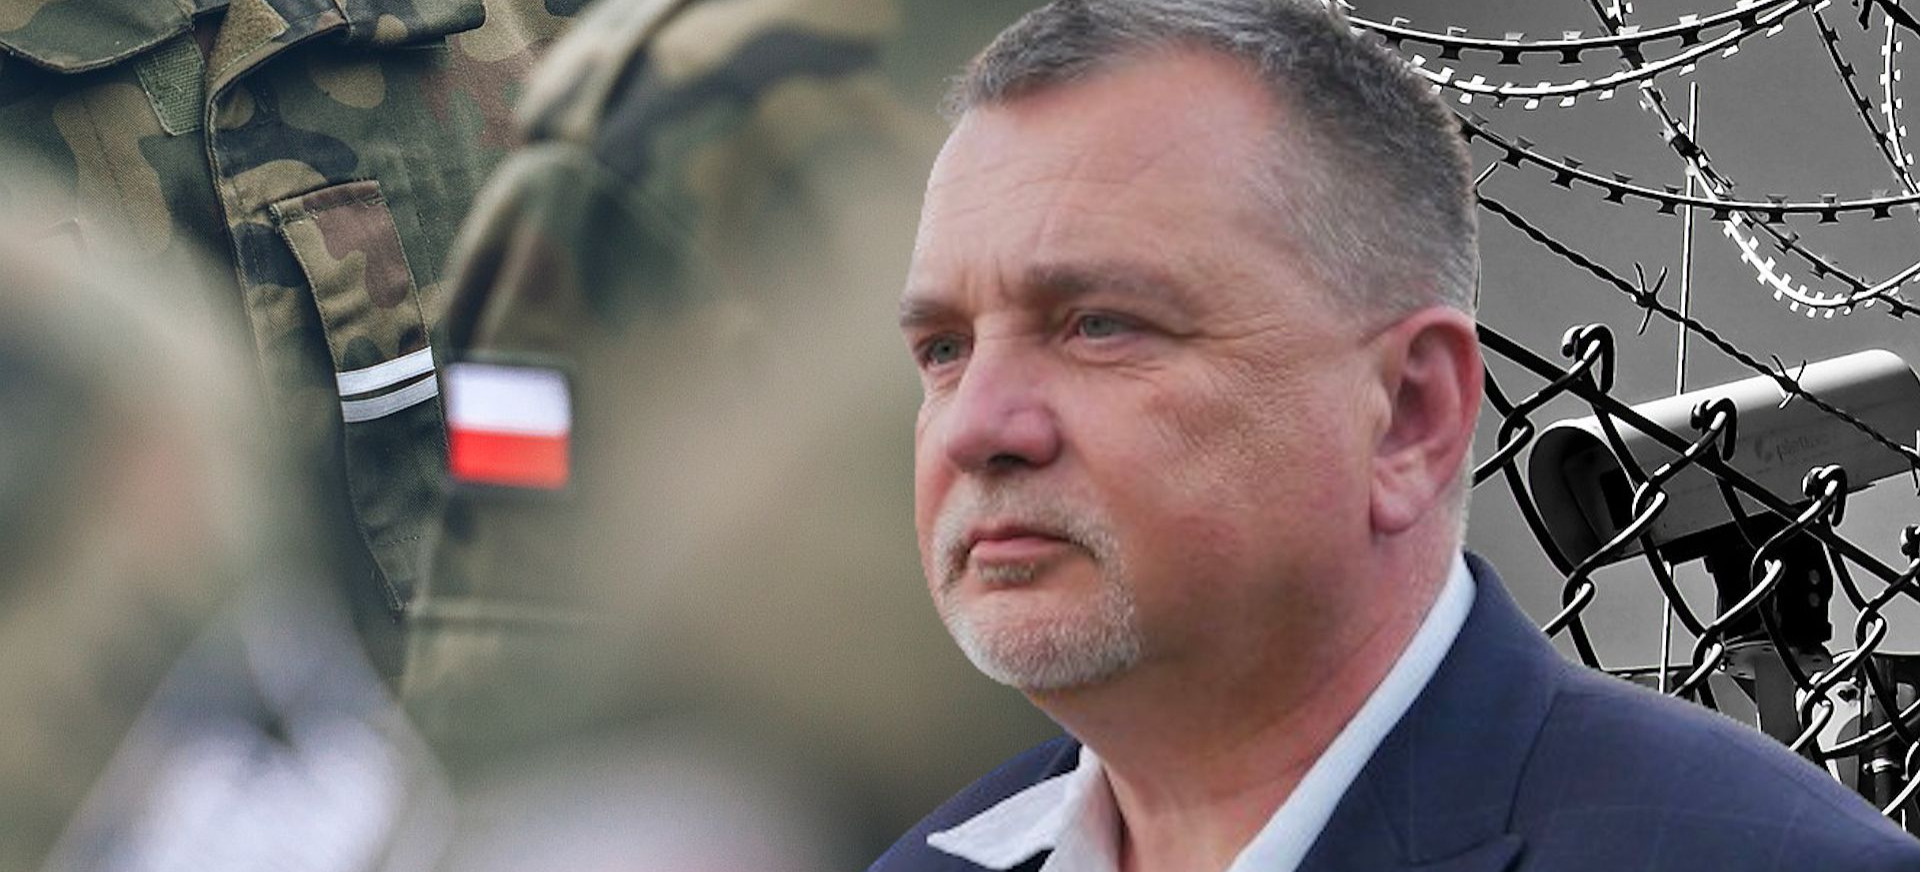 Andrzej Zapałowski w Sejmie: “Jesteśmy przed prawdziwym kryzysem na granicy!” (VIDEO)